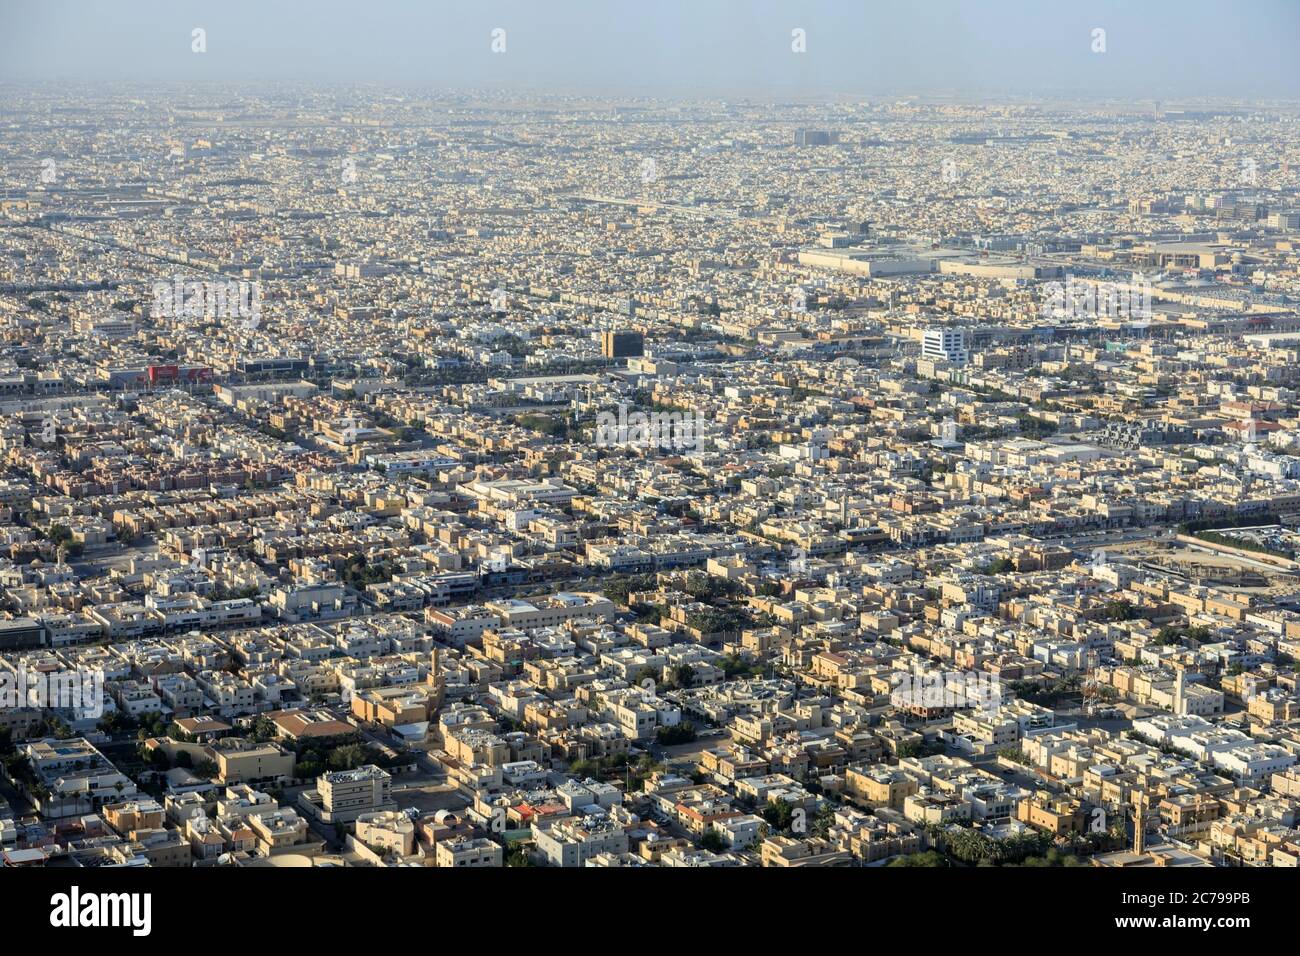 Riad, Arabia Saudita, Febbraio 14 2020: Veduta aerea del centro di Riyadh in Arabia Saudita. Le foto sono state scattate dallo Skybridge nella Torre del Regno Foto Stock